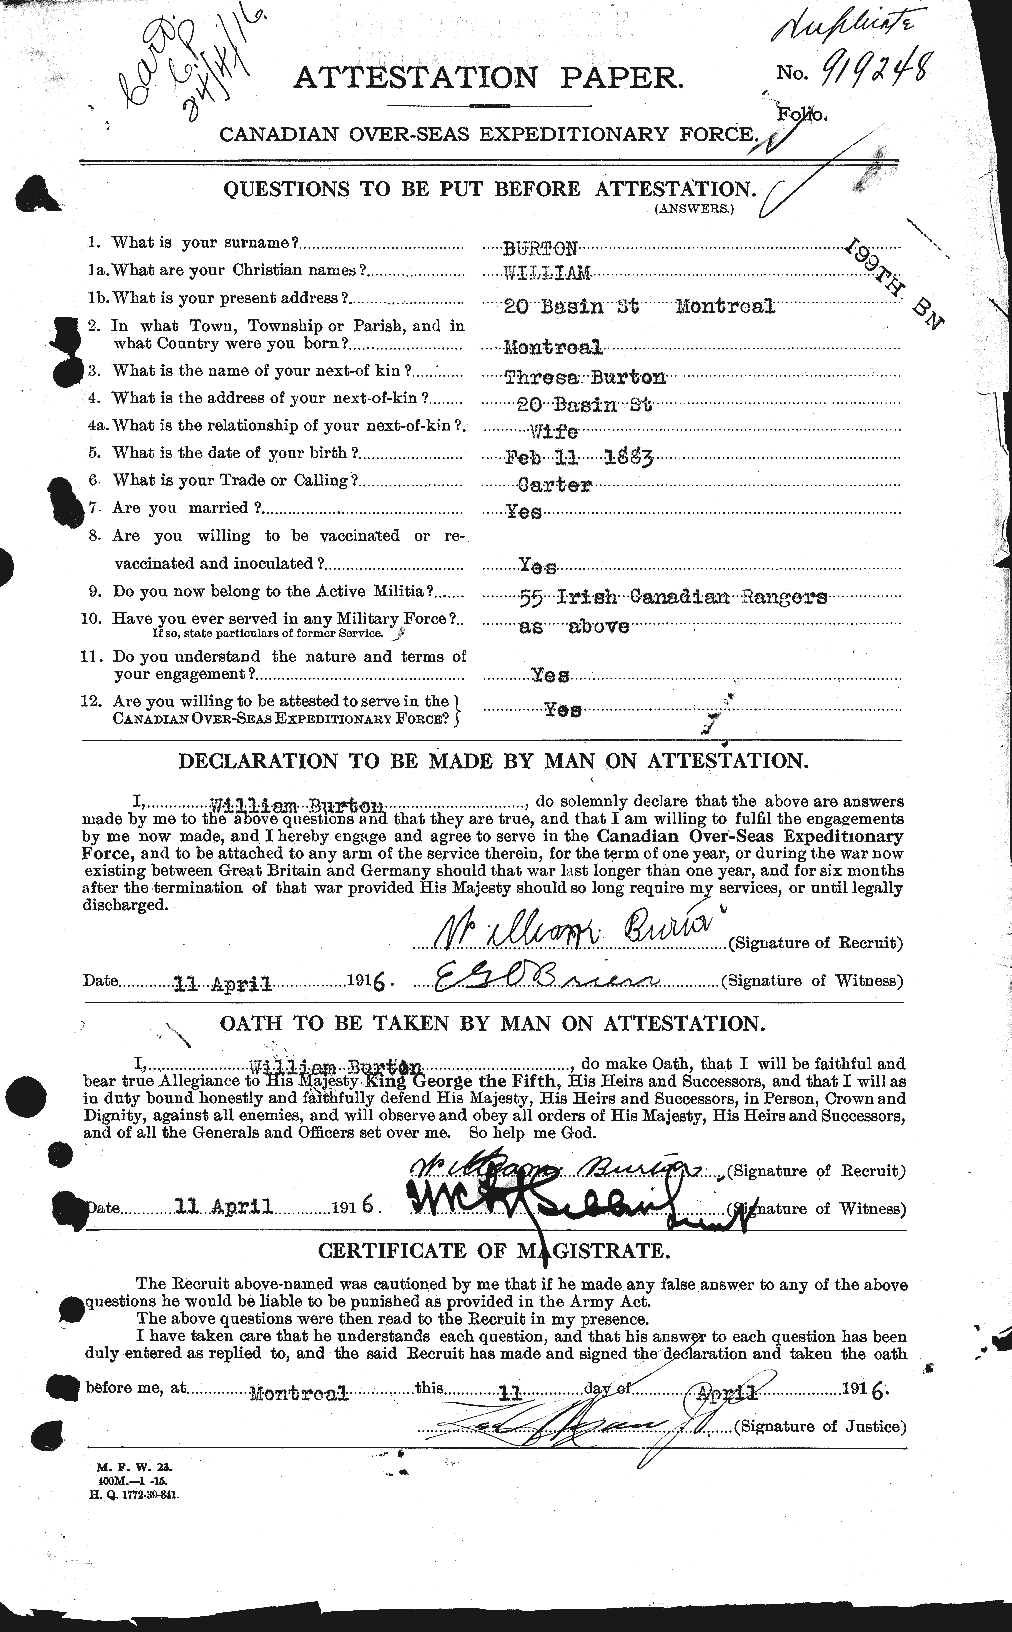 Dossiers du Personnel de la Première Guerre mondiale - CEC 272755a